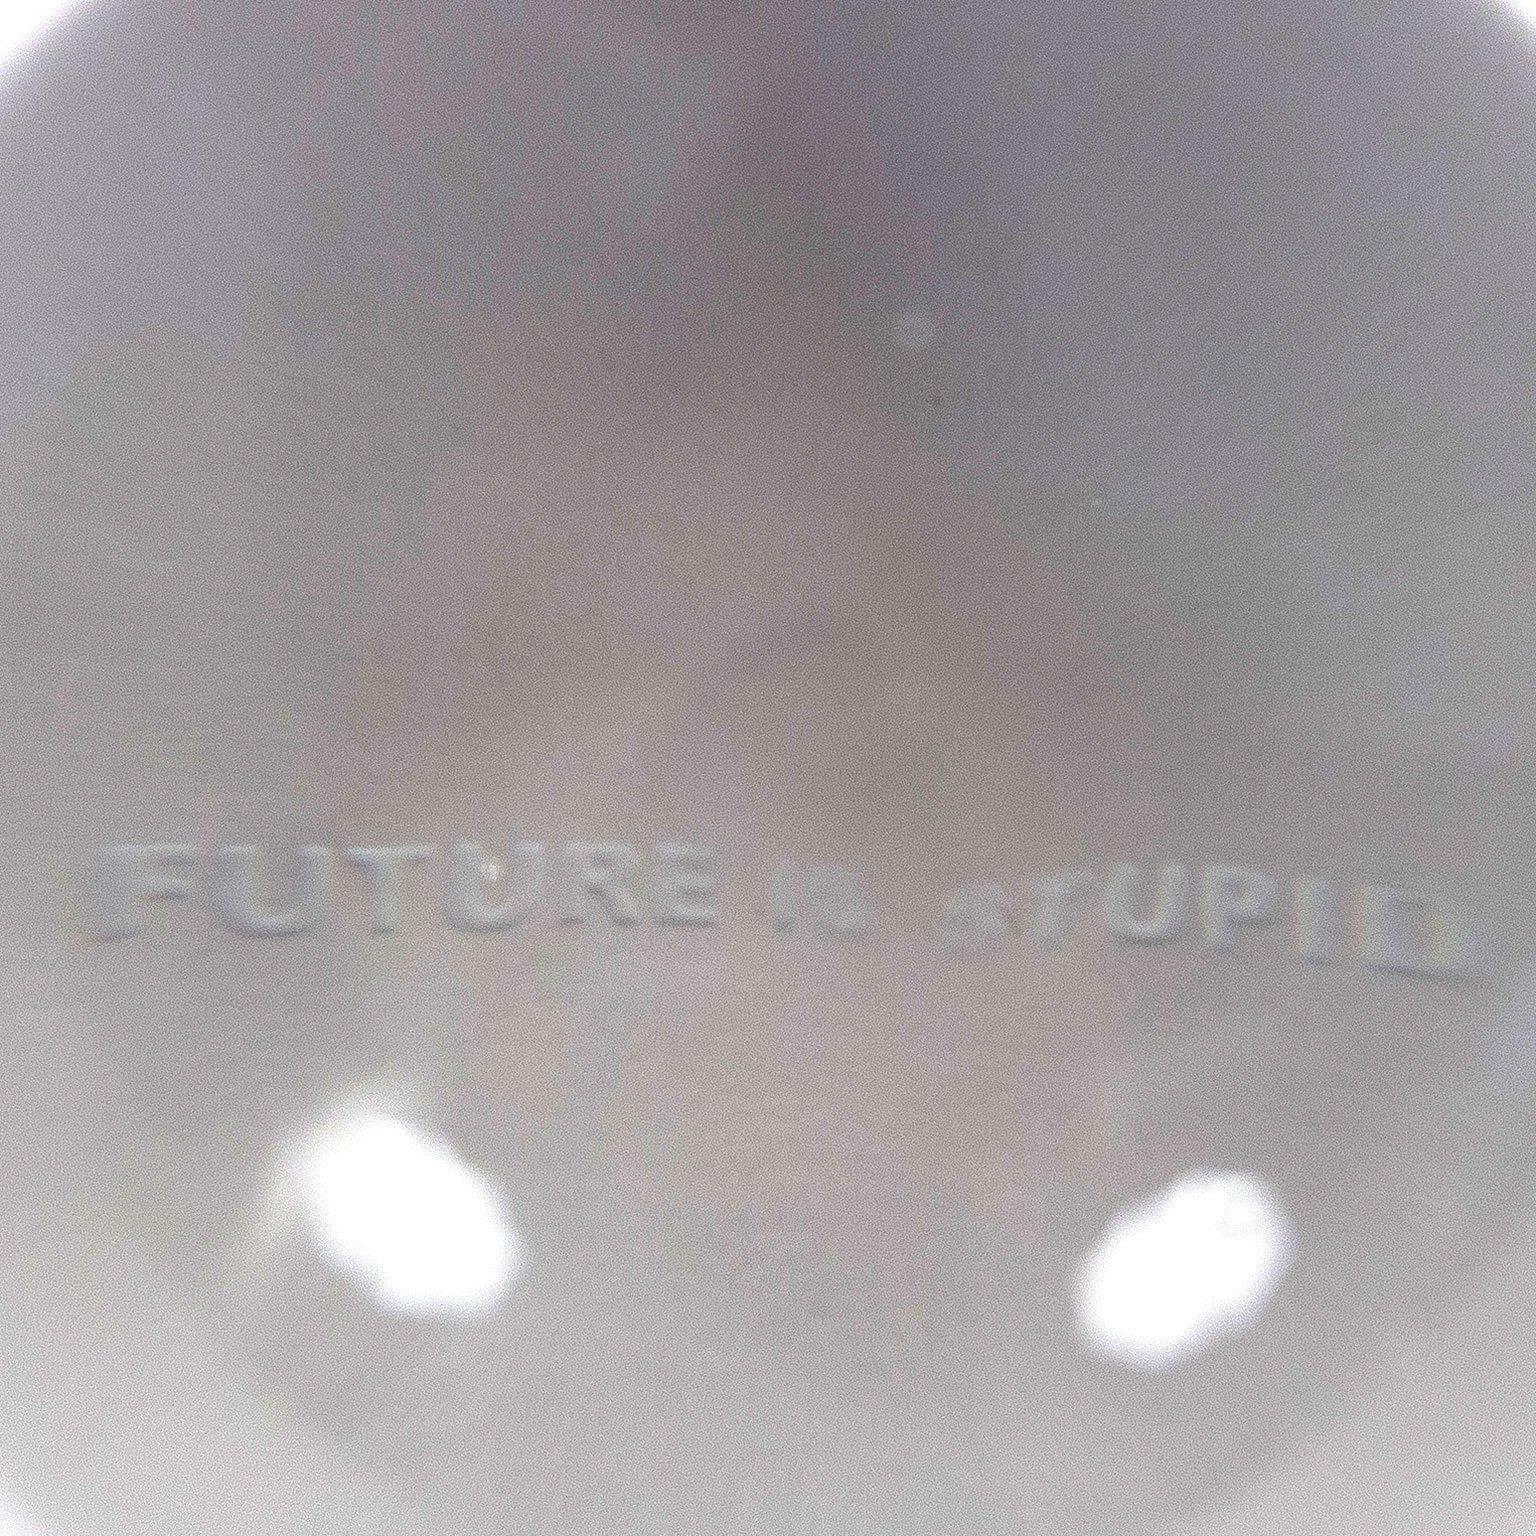 future stupid